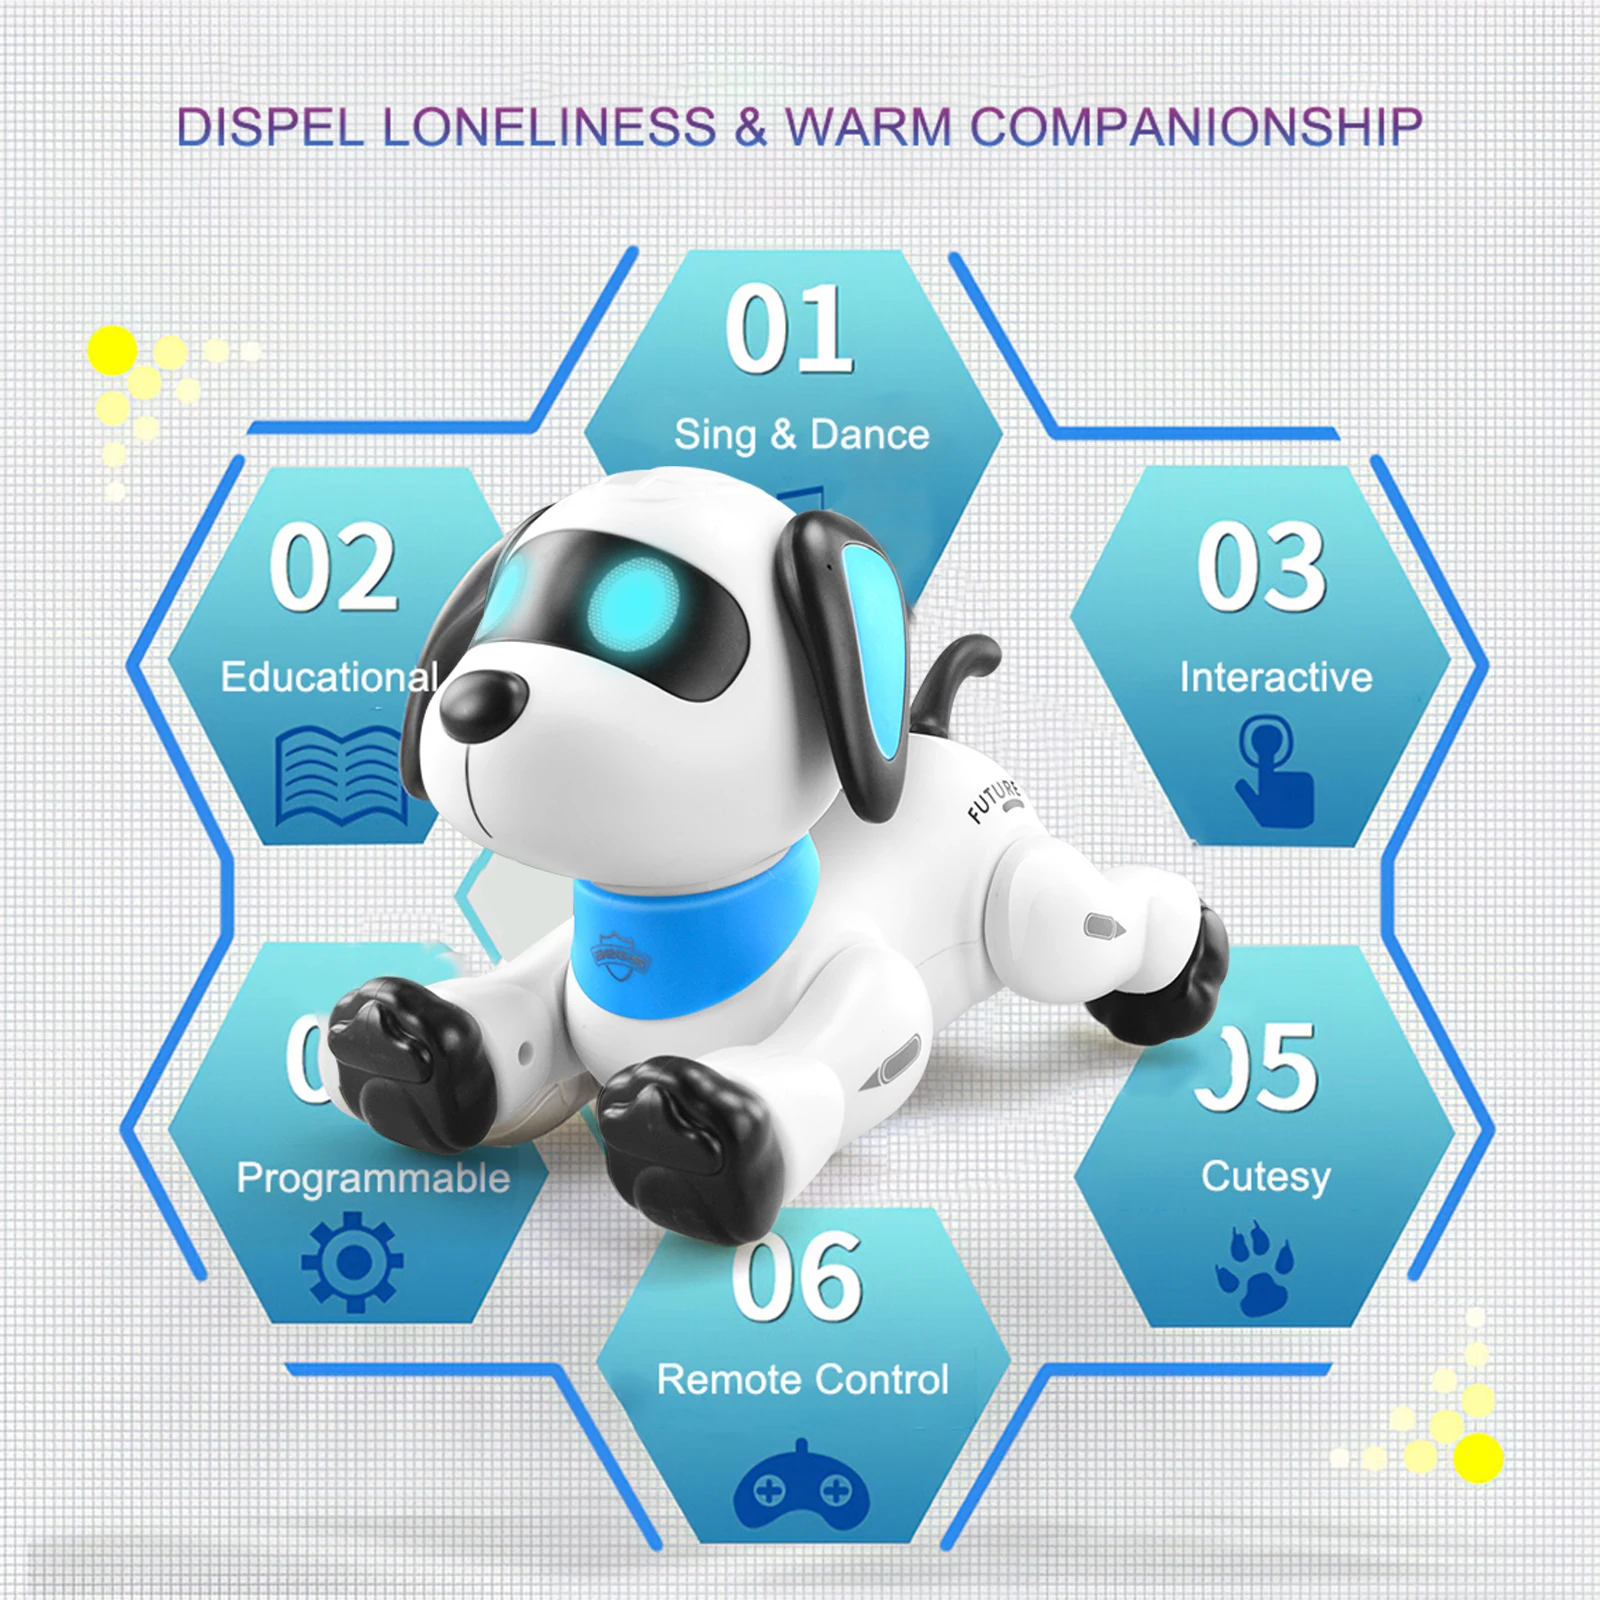 Электронная собака-робот LE NENG K21 трюковая собака с дистанционным управлением